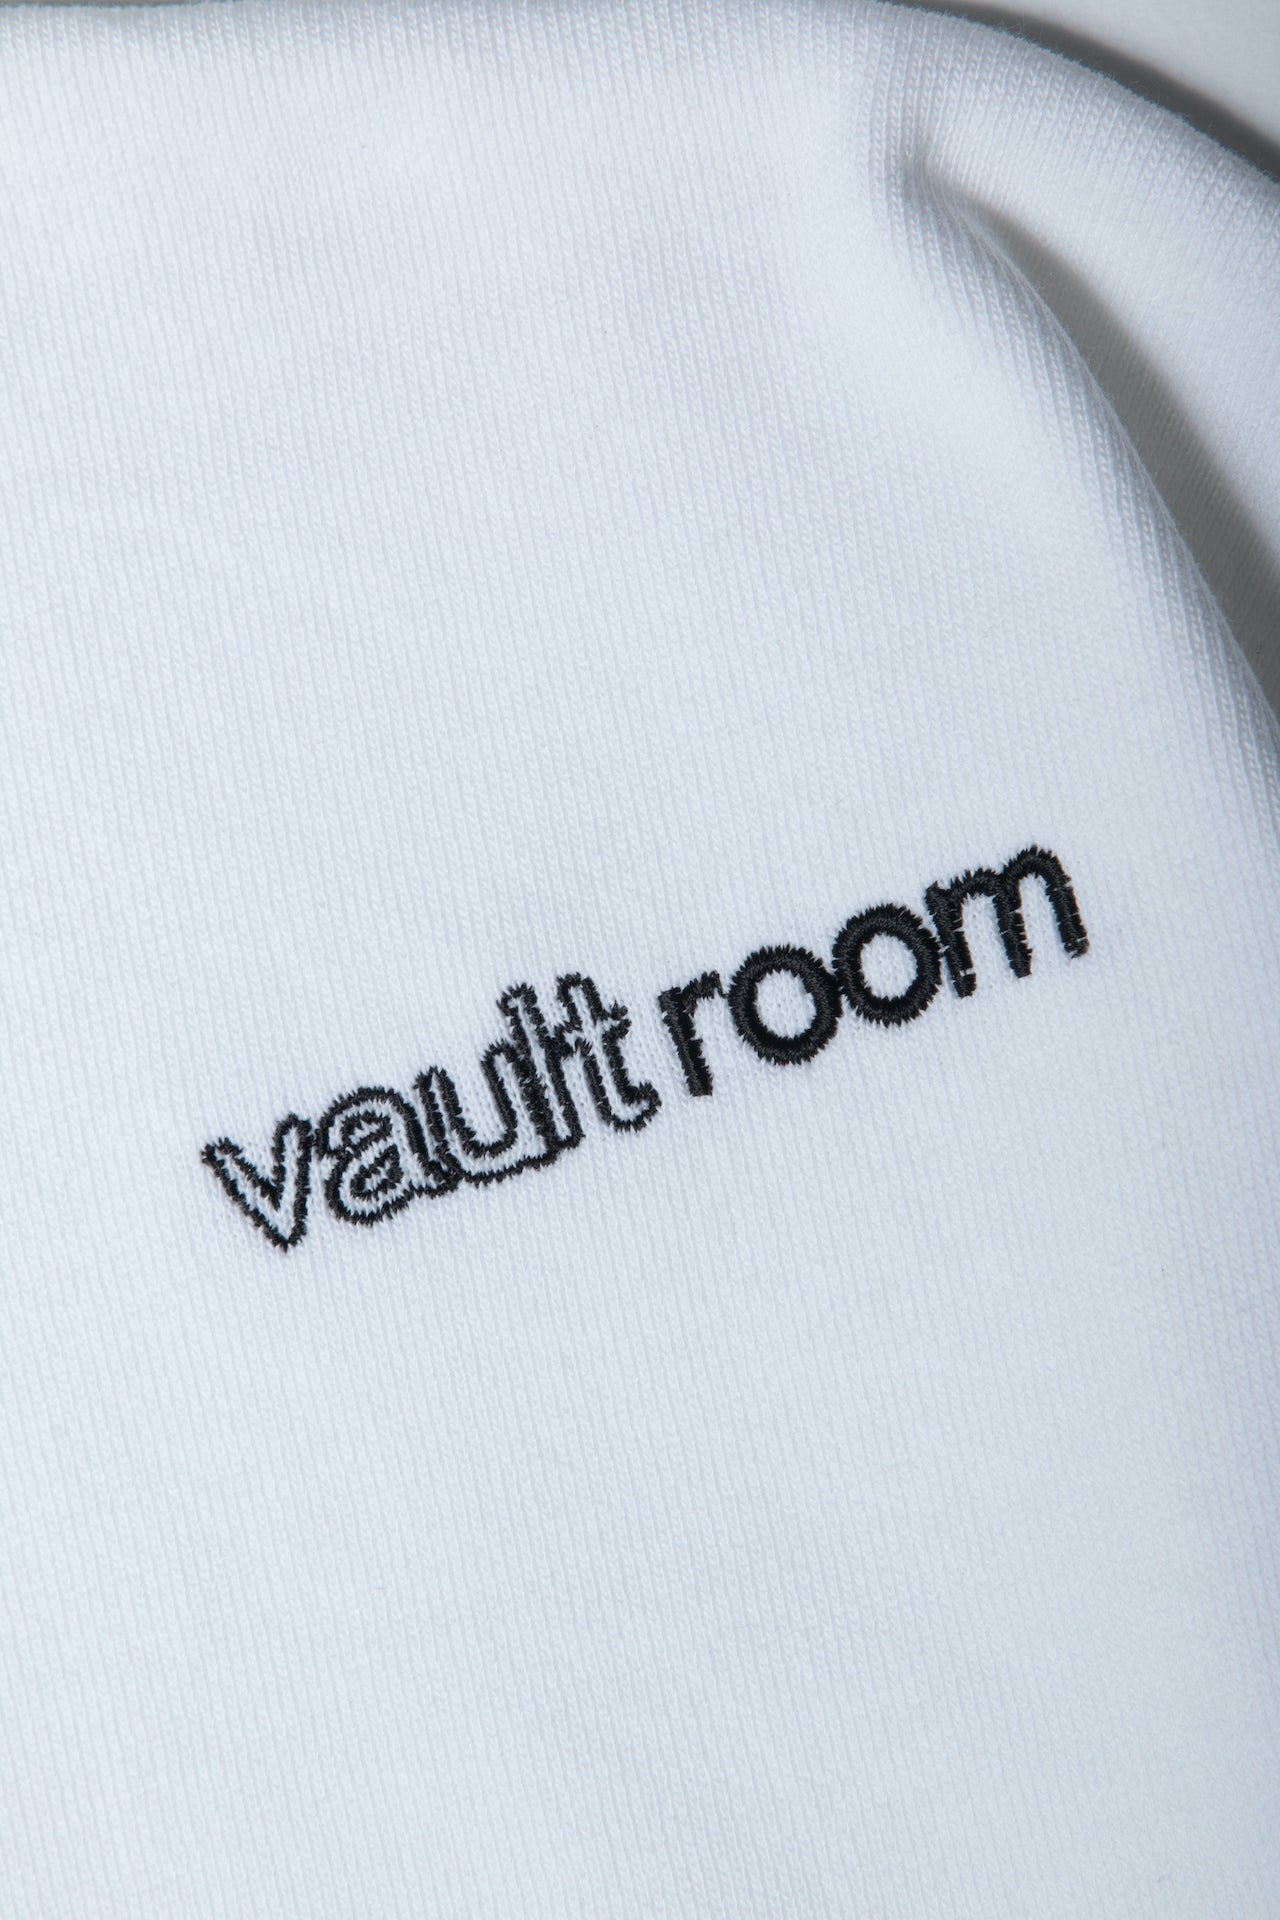 ZETA DIVISION x vaultroom LOGO TEE / WHT – VAULTROOM